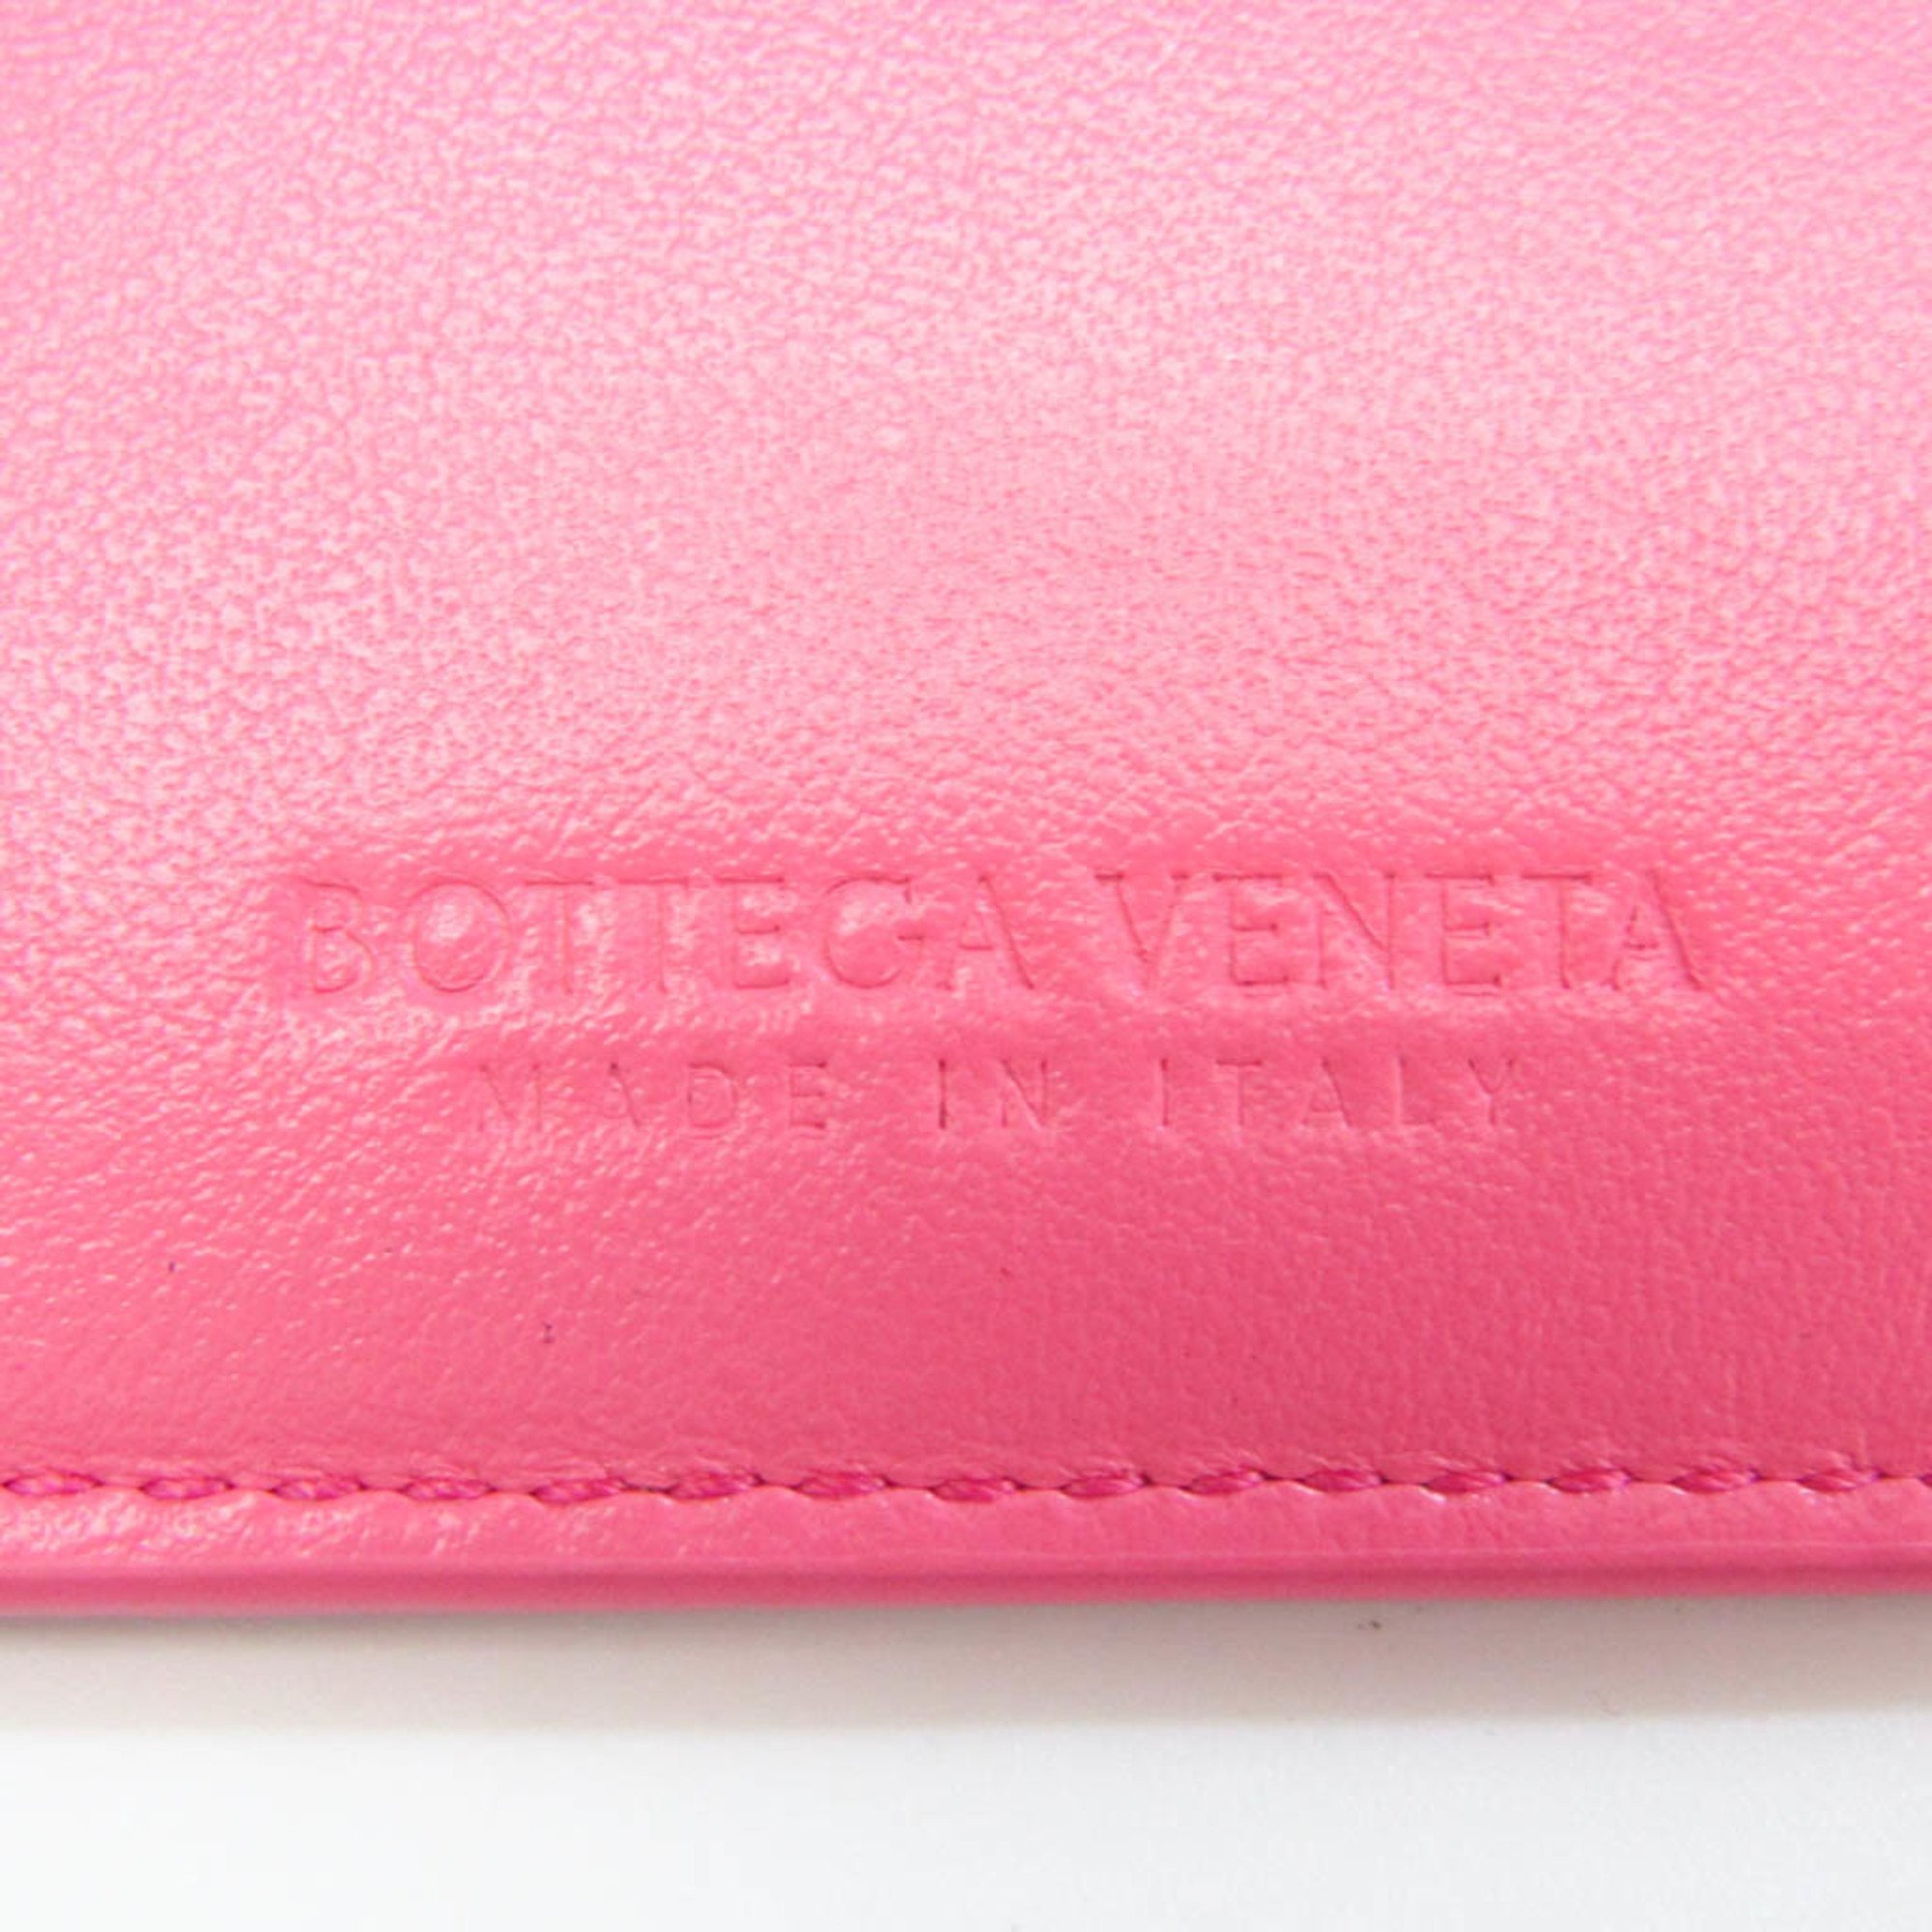 ボッテガ・ヴェネタ(Bottega Veneta) イントレチャート レディース レザー キーケース ピンク